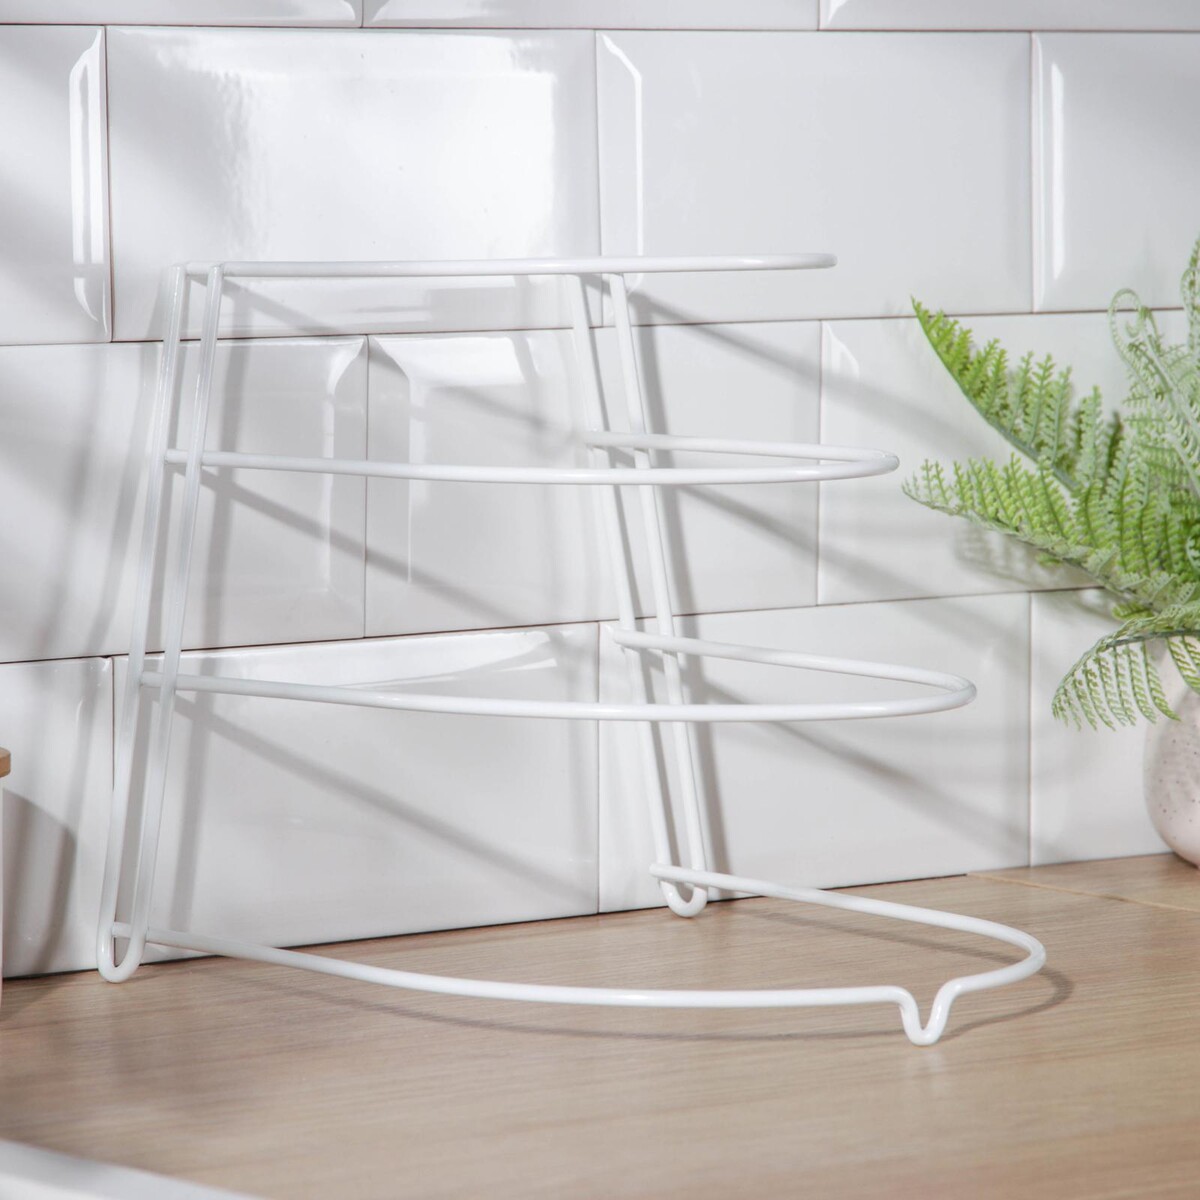 Подставка для хранения сковородок настольная, 3 отделения, 23×24×27 см, цвет белый подставка настольная а4 вертикальн для рекл материалов двусторонняя